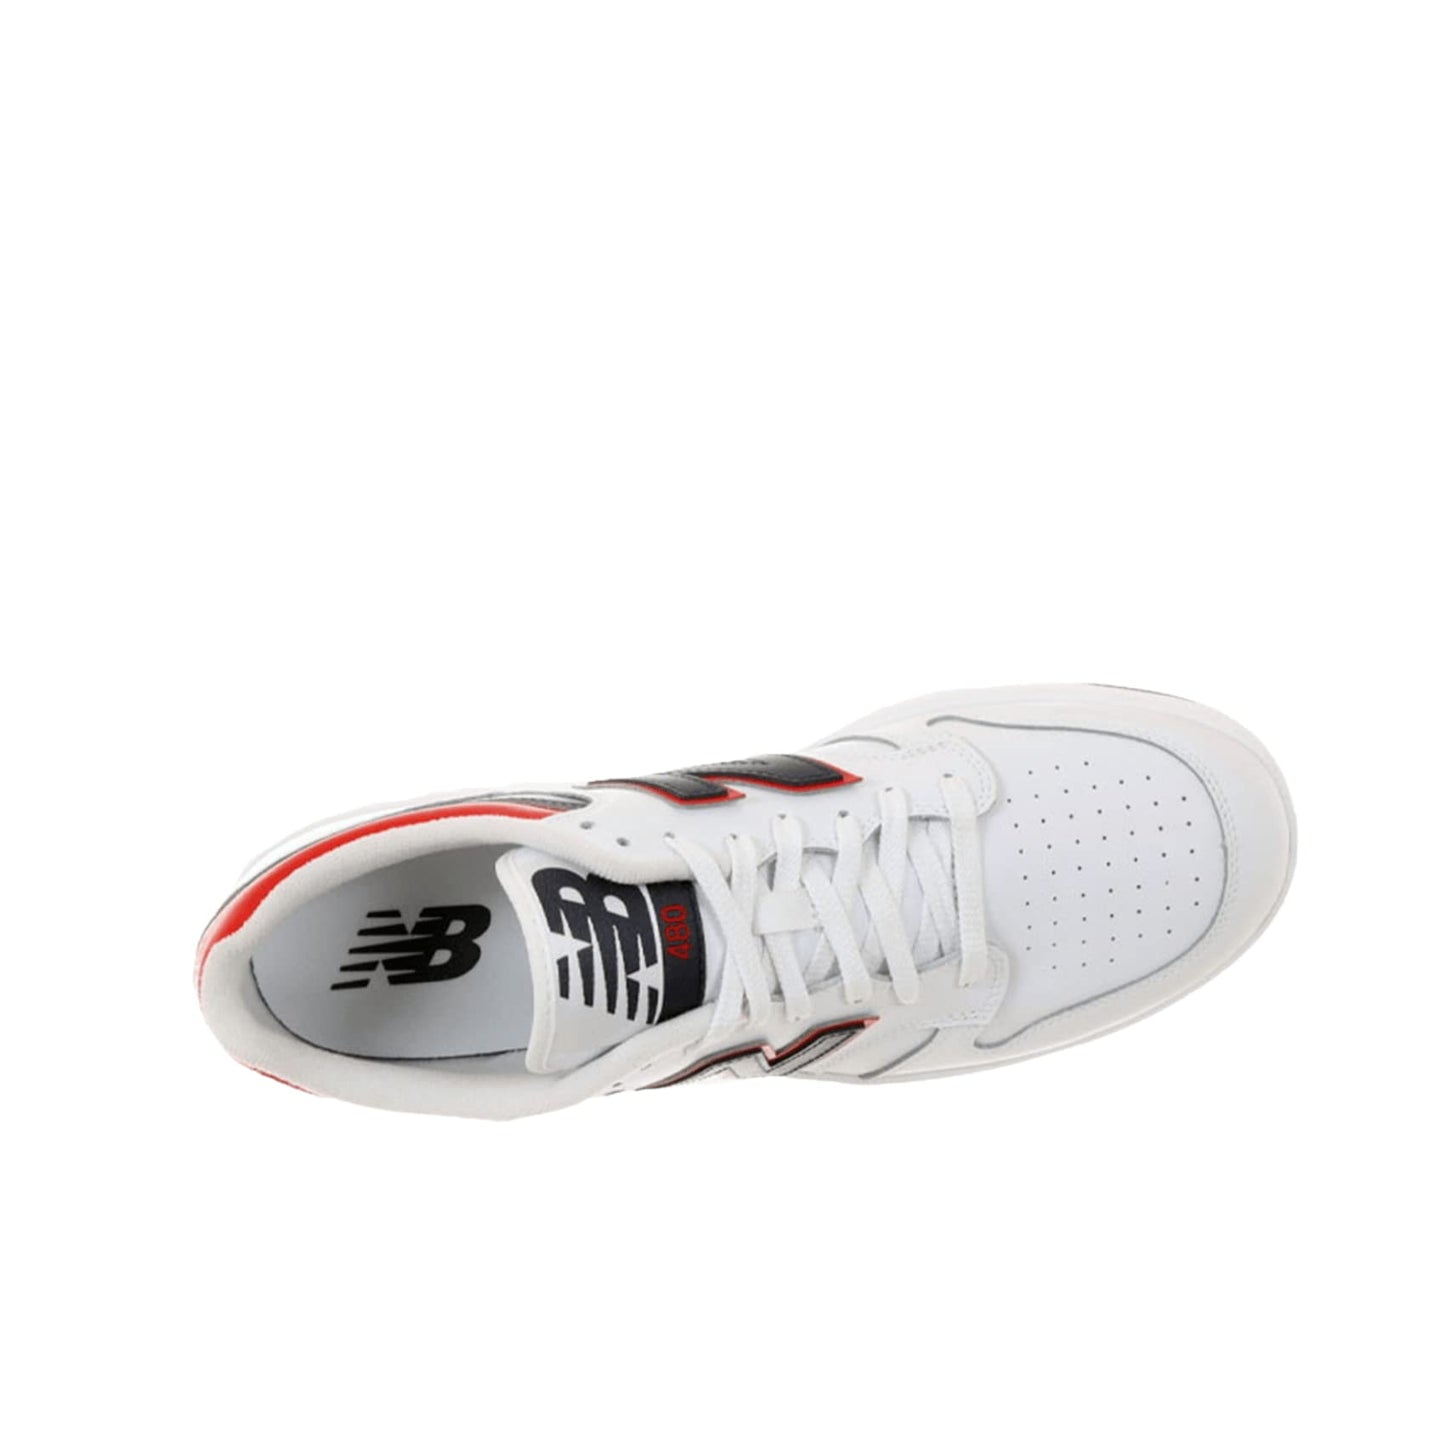 New Balance Unisex-Adult BB480 V1 Sneaker, White/Natural Indigo/Team Red, 4